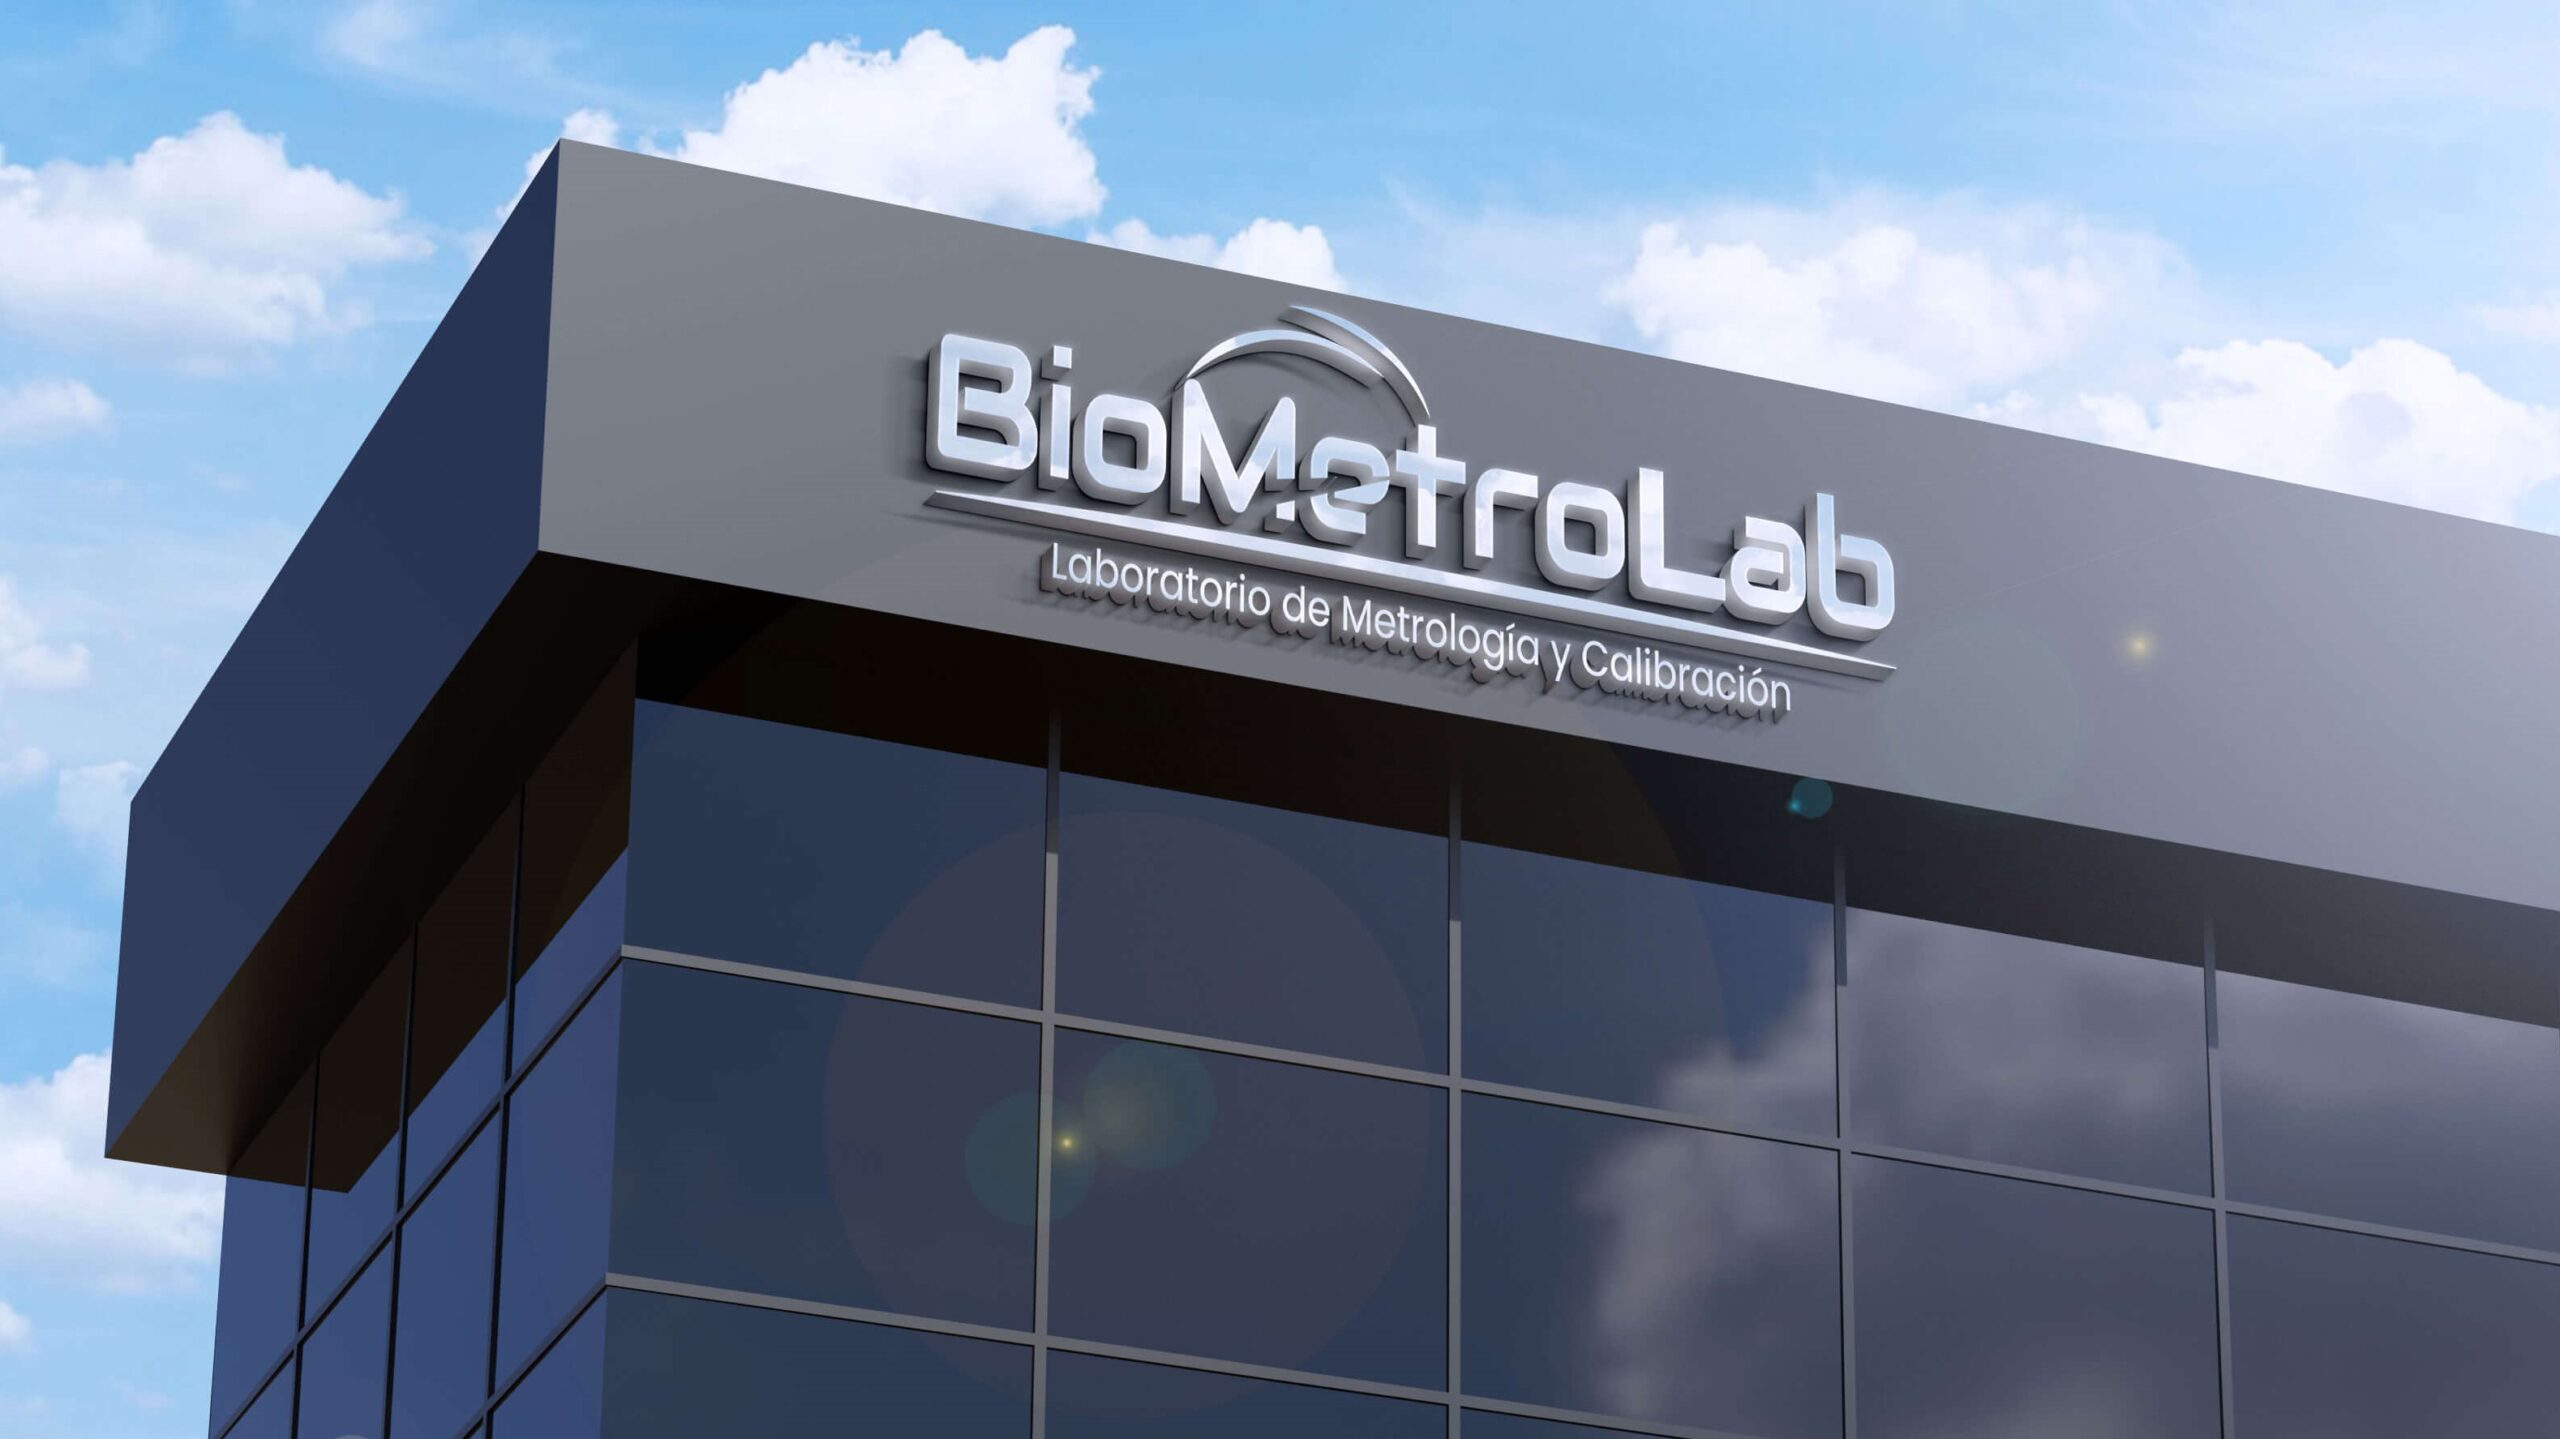 Biometrolab es una empresa nueva que pertenece al GRUPO TERIUX el cual brinda servicios de calibración de instrumentos y equipamiento para su certificación y seguridad industrial bajo la gestión de calidad en base a normas internacionales como la ISO. – Grupo Teriux